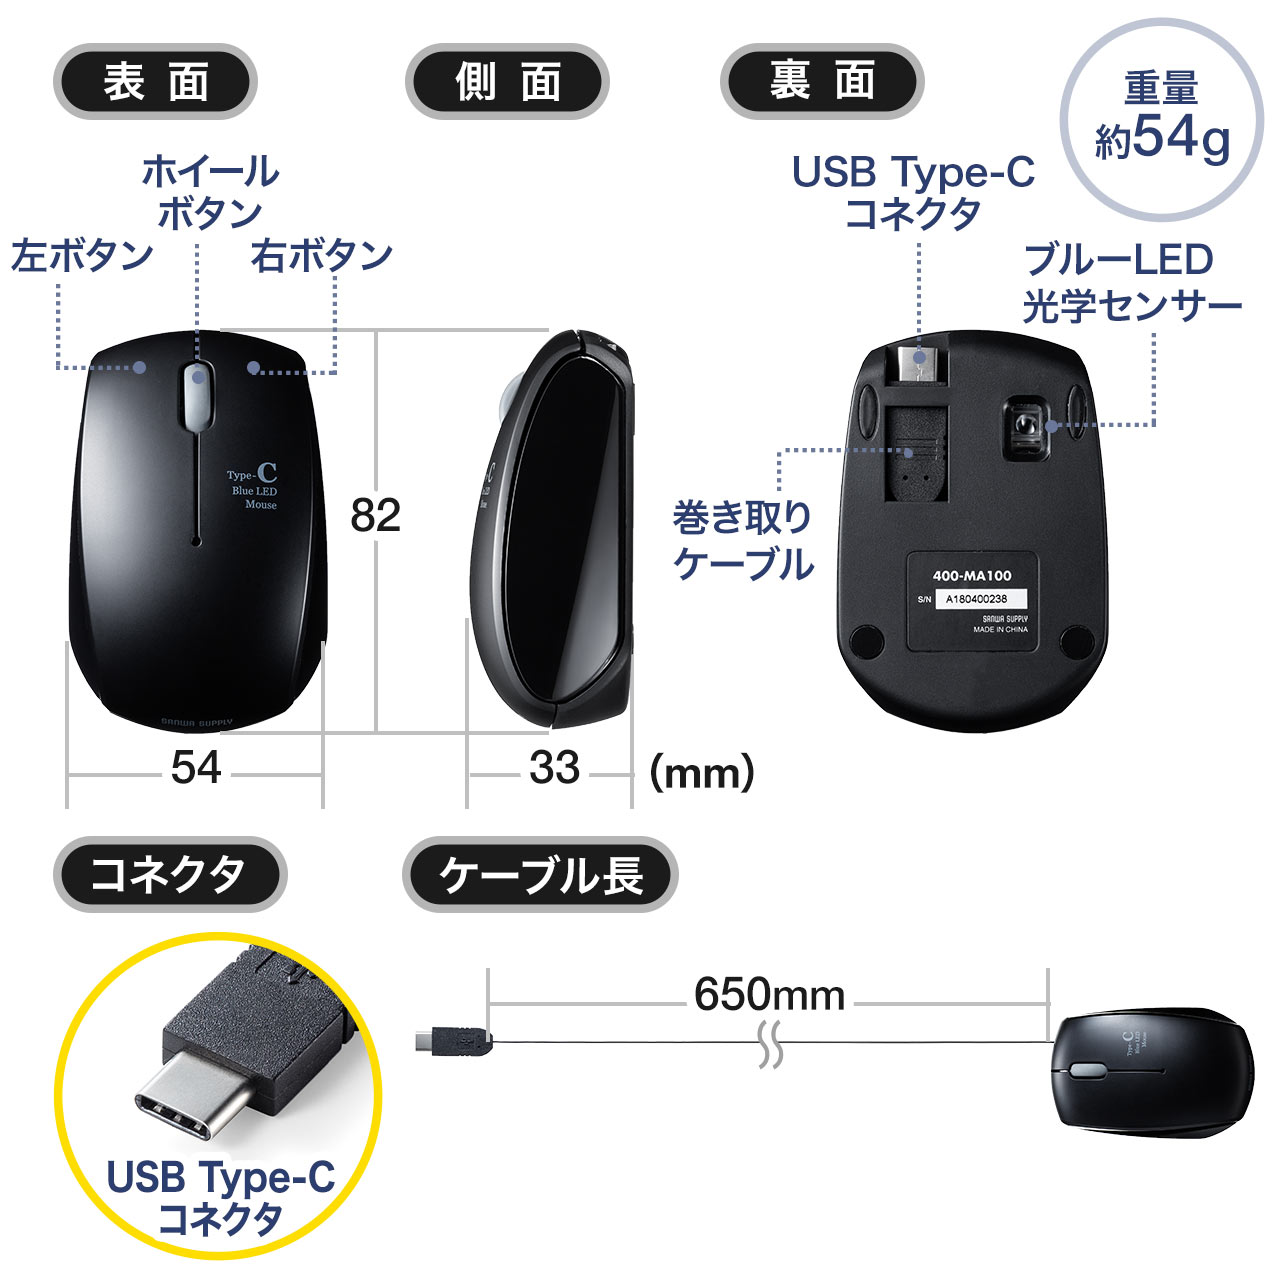 L}EX USB Type-C u[LEDZT[ RpNg 3{^ 400-MA100